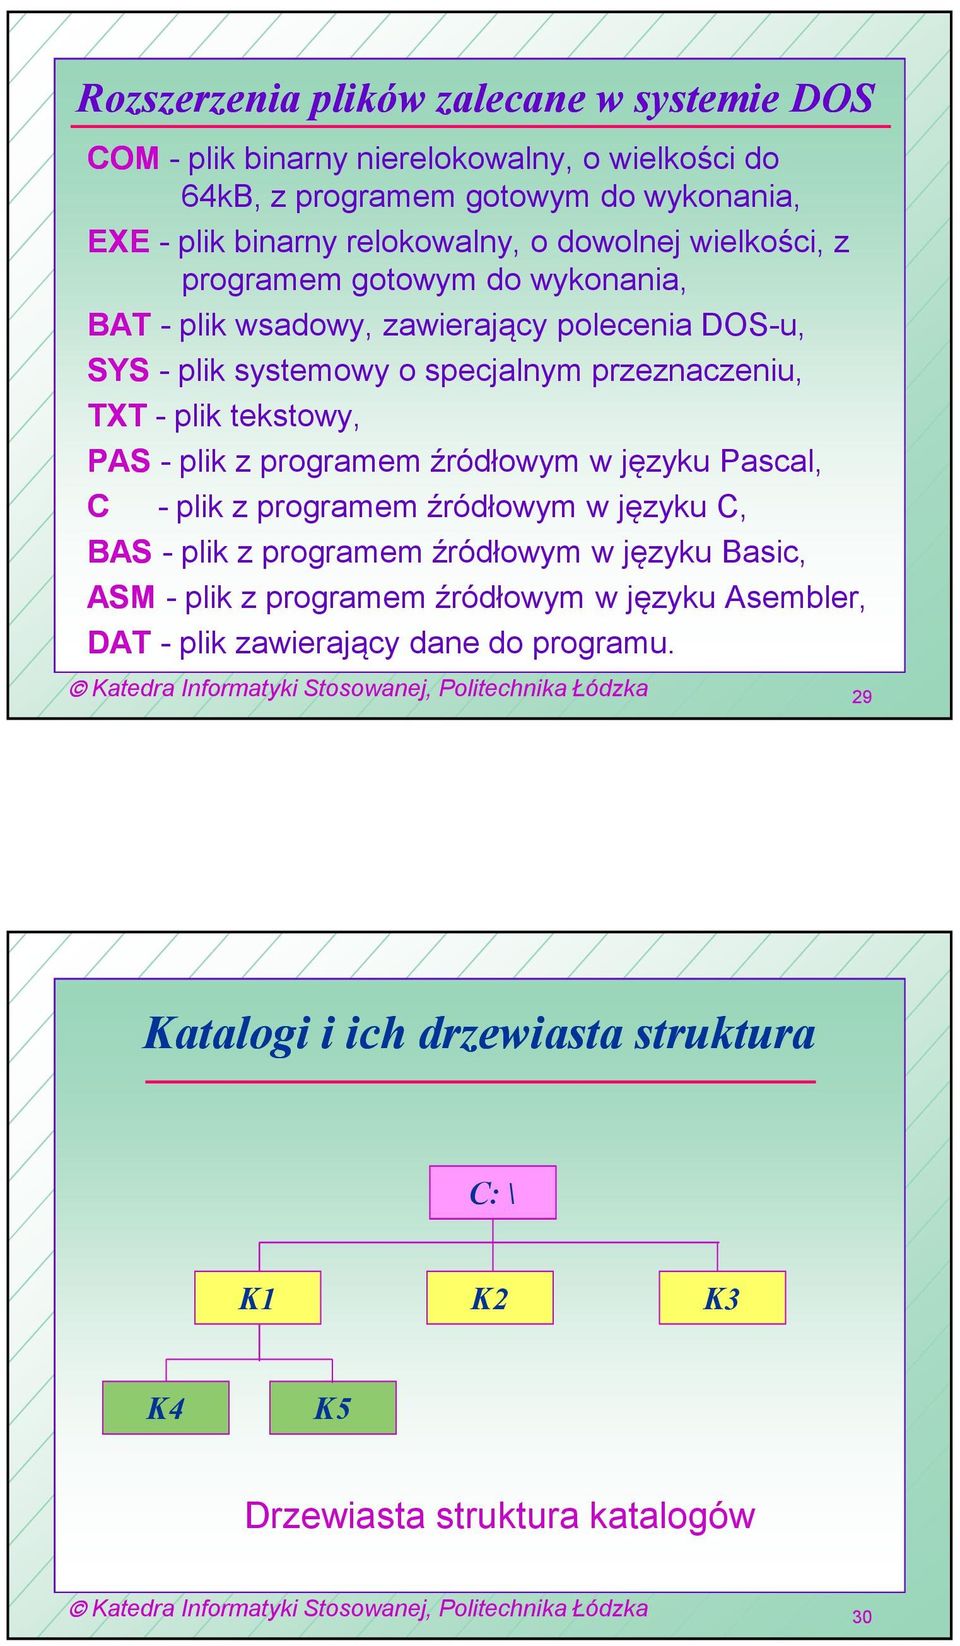 tekstowy, PAS - plik z programem źródłowym w języku Pascal, C - plik z programem źródłowym w języku C, BAS - plik z programem źródłowym w języku Basic, ASM - plik z